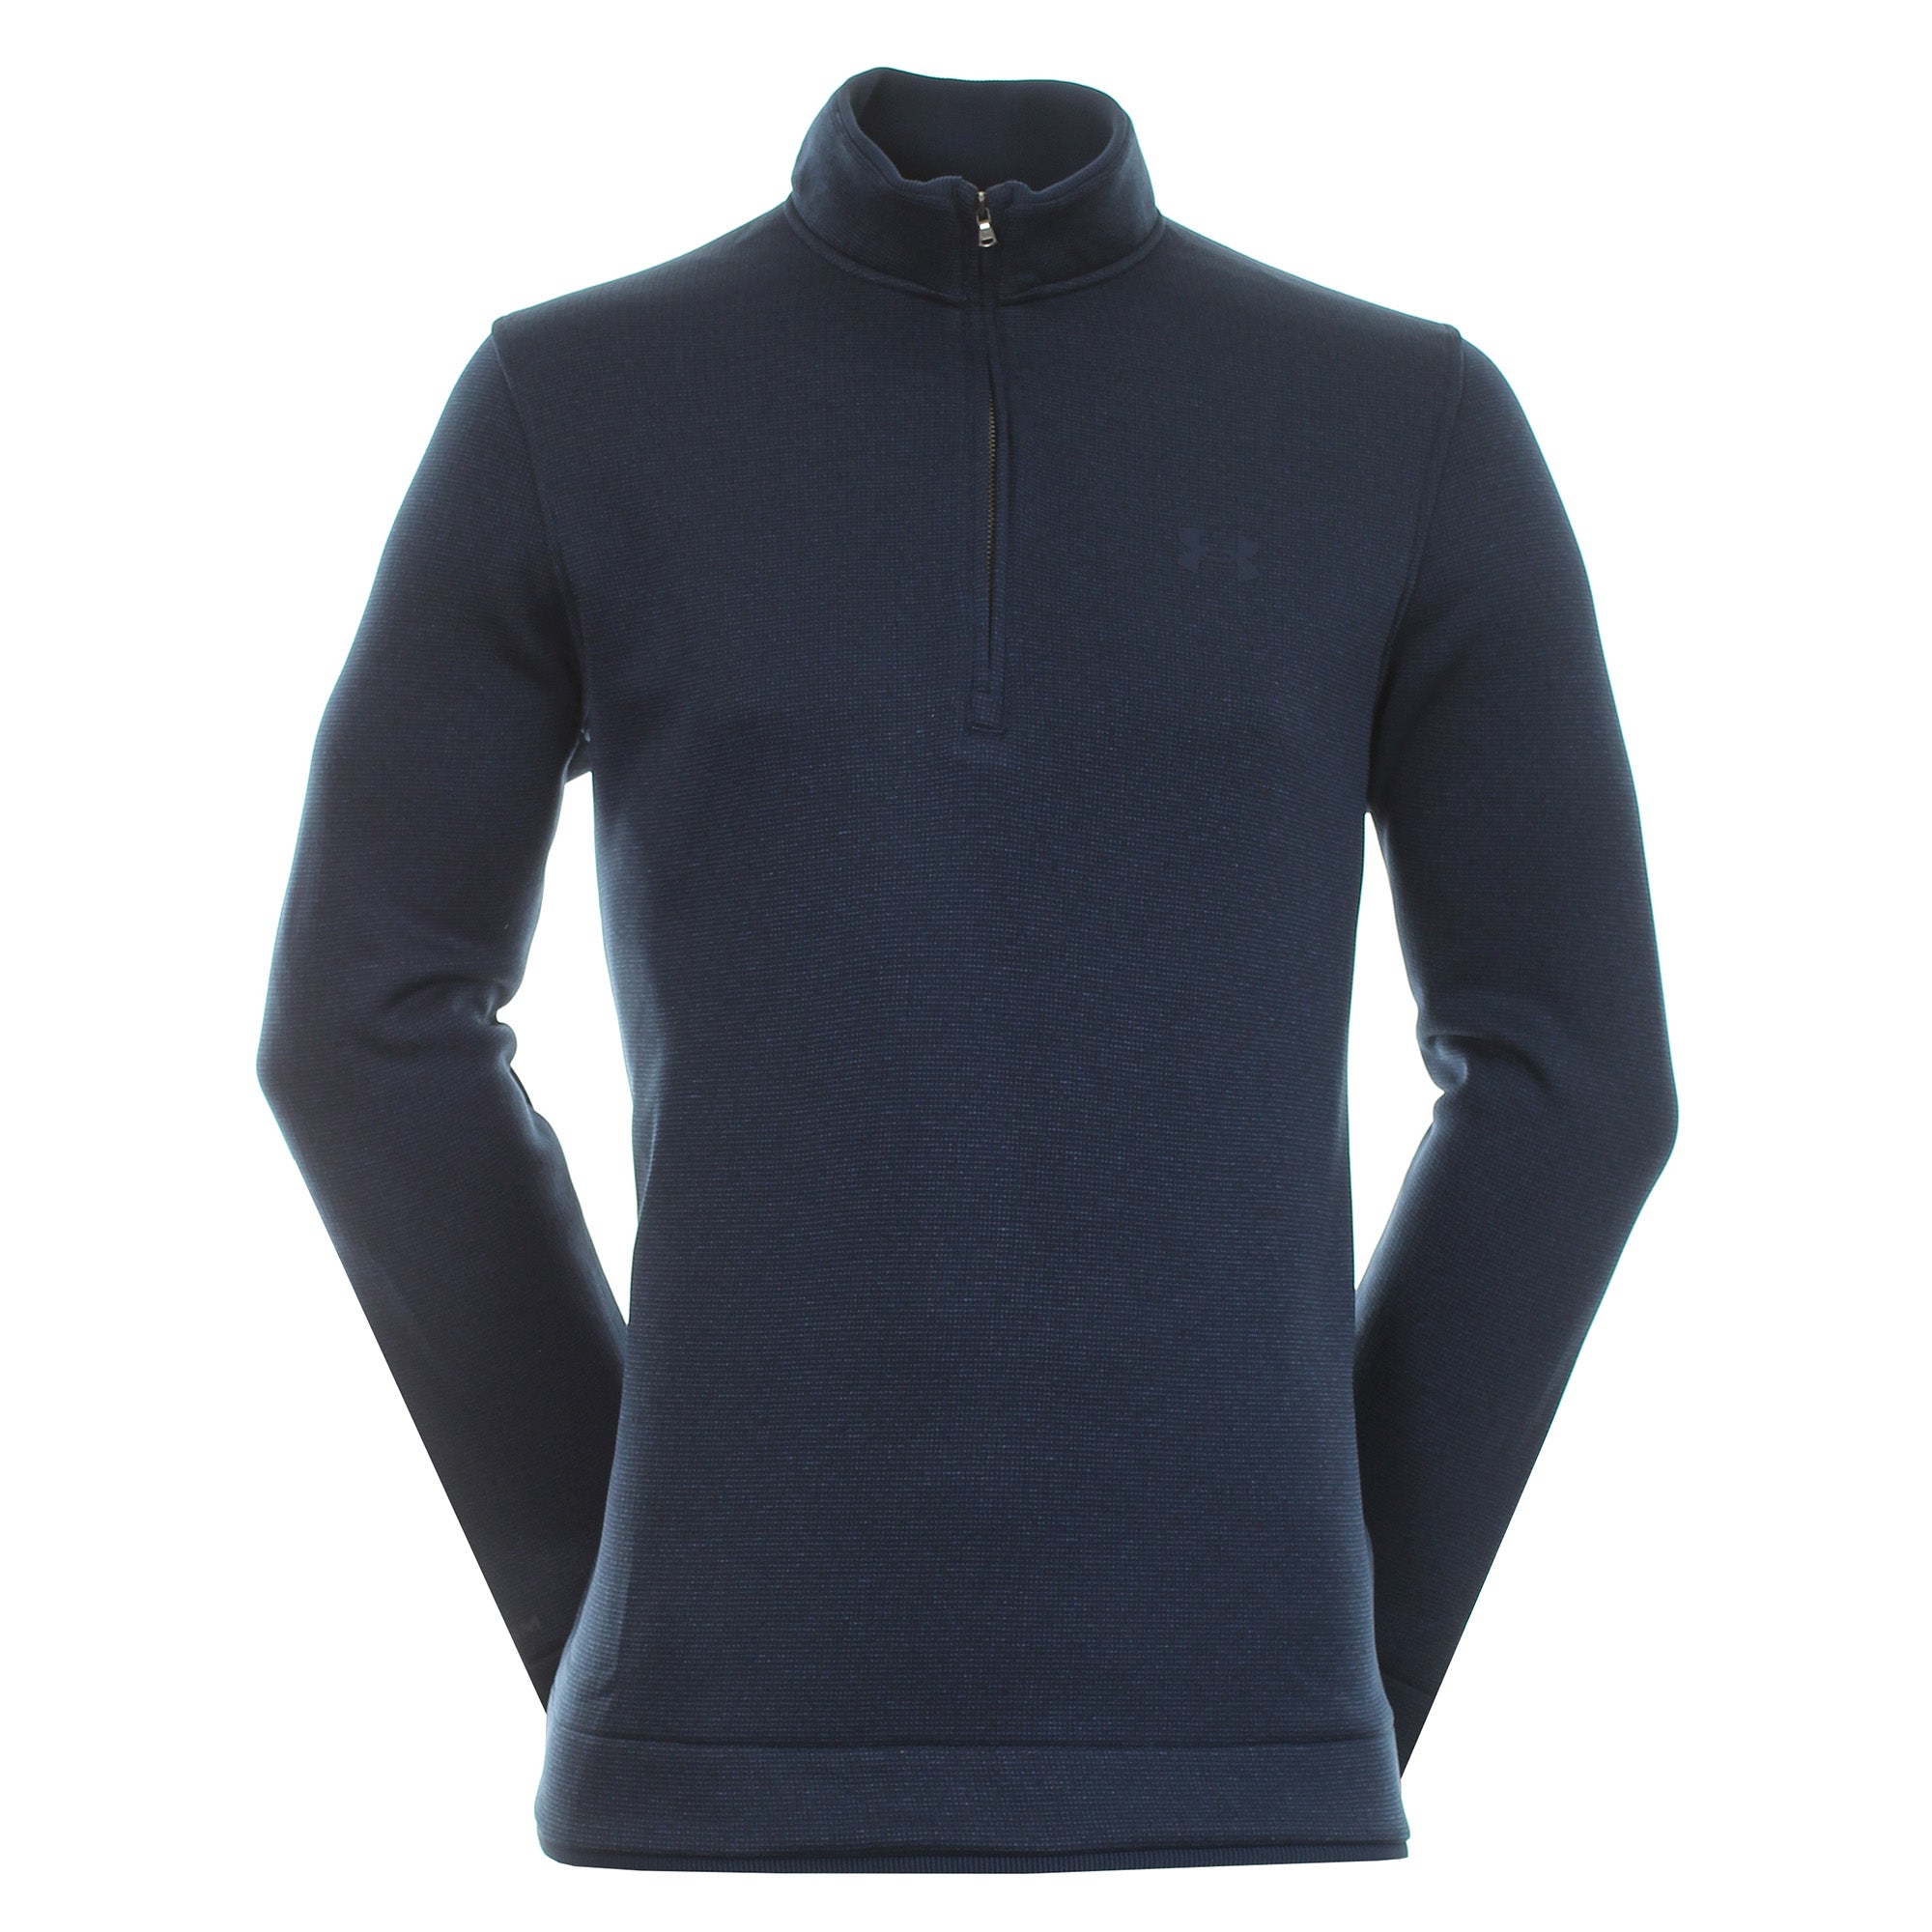 Intens markeerstift Theoretisch Under Armour Golf Storm Sweater Fleece Zip 1359971 Academy 408 | Function18  | Restrictedgs